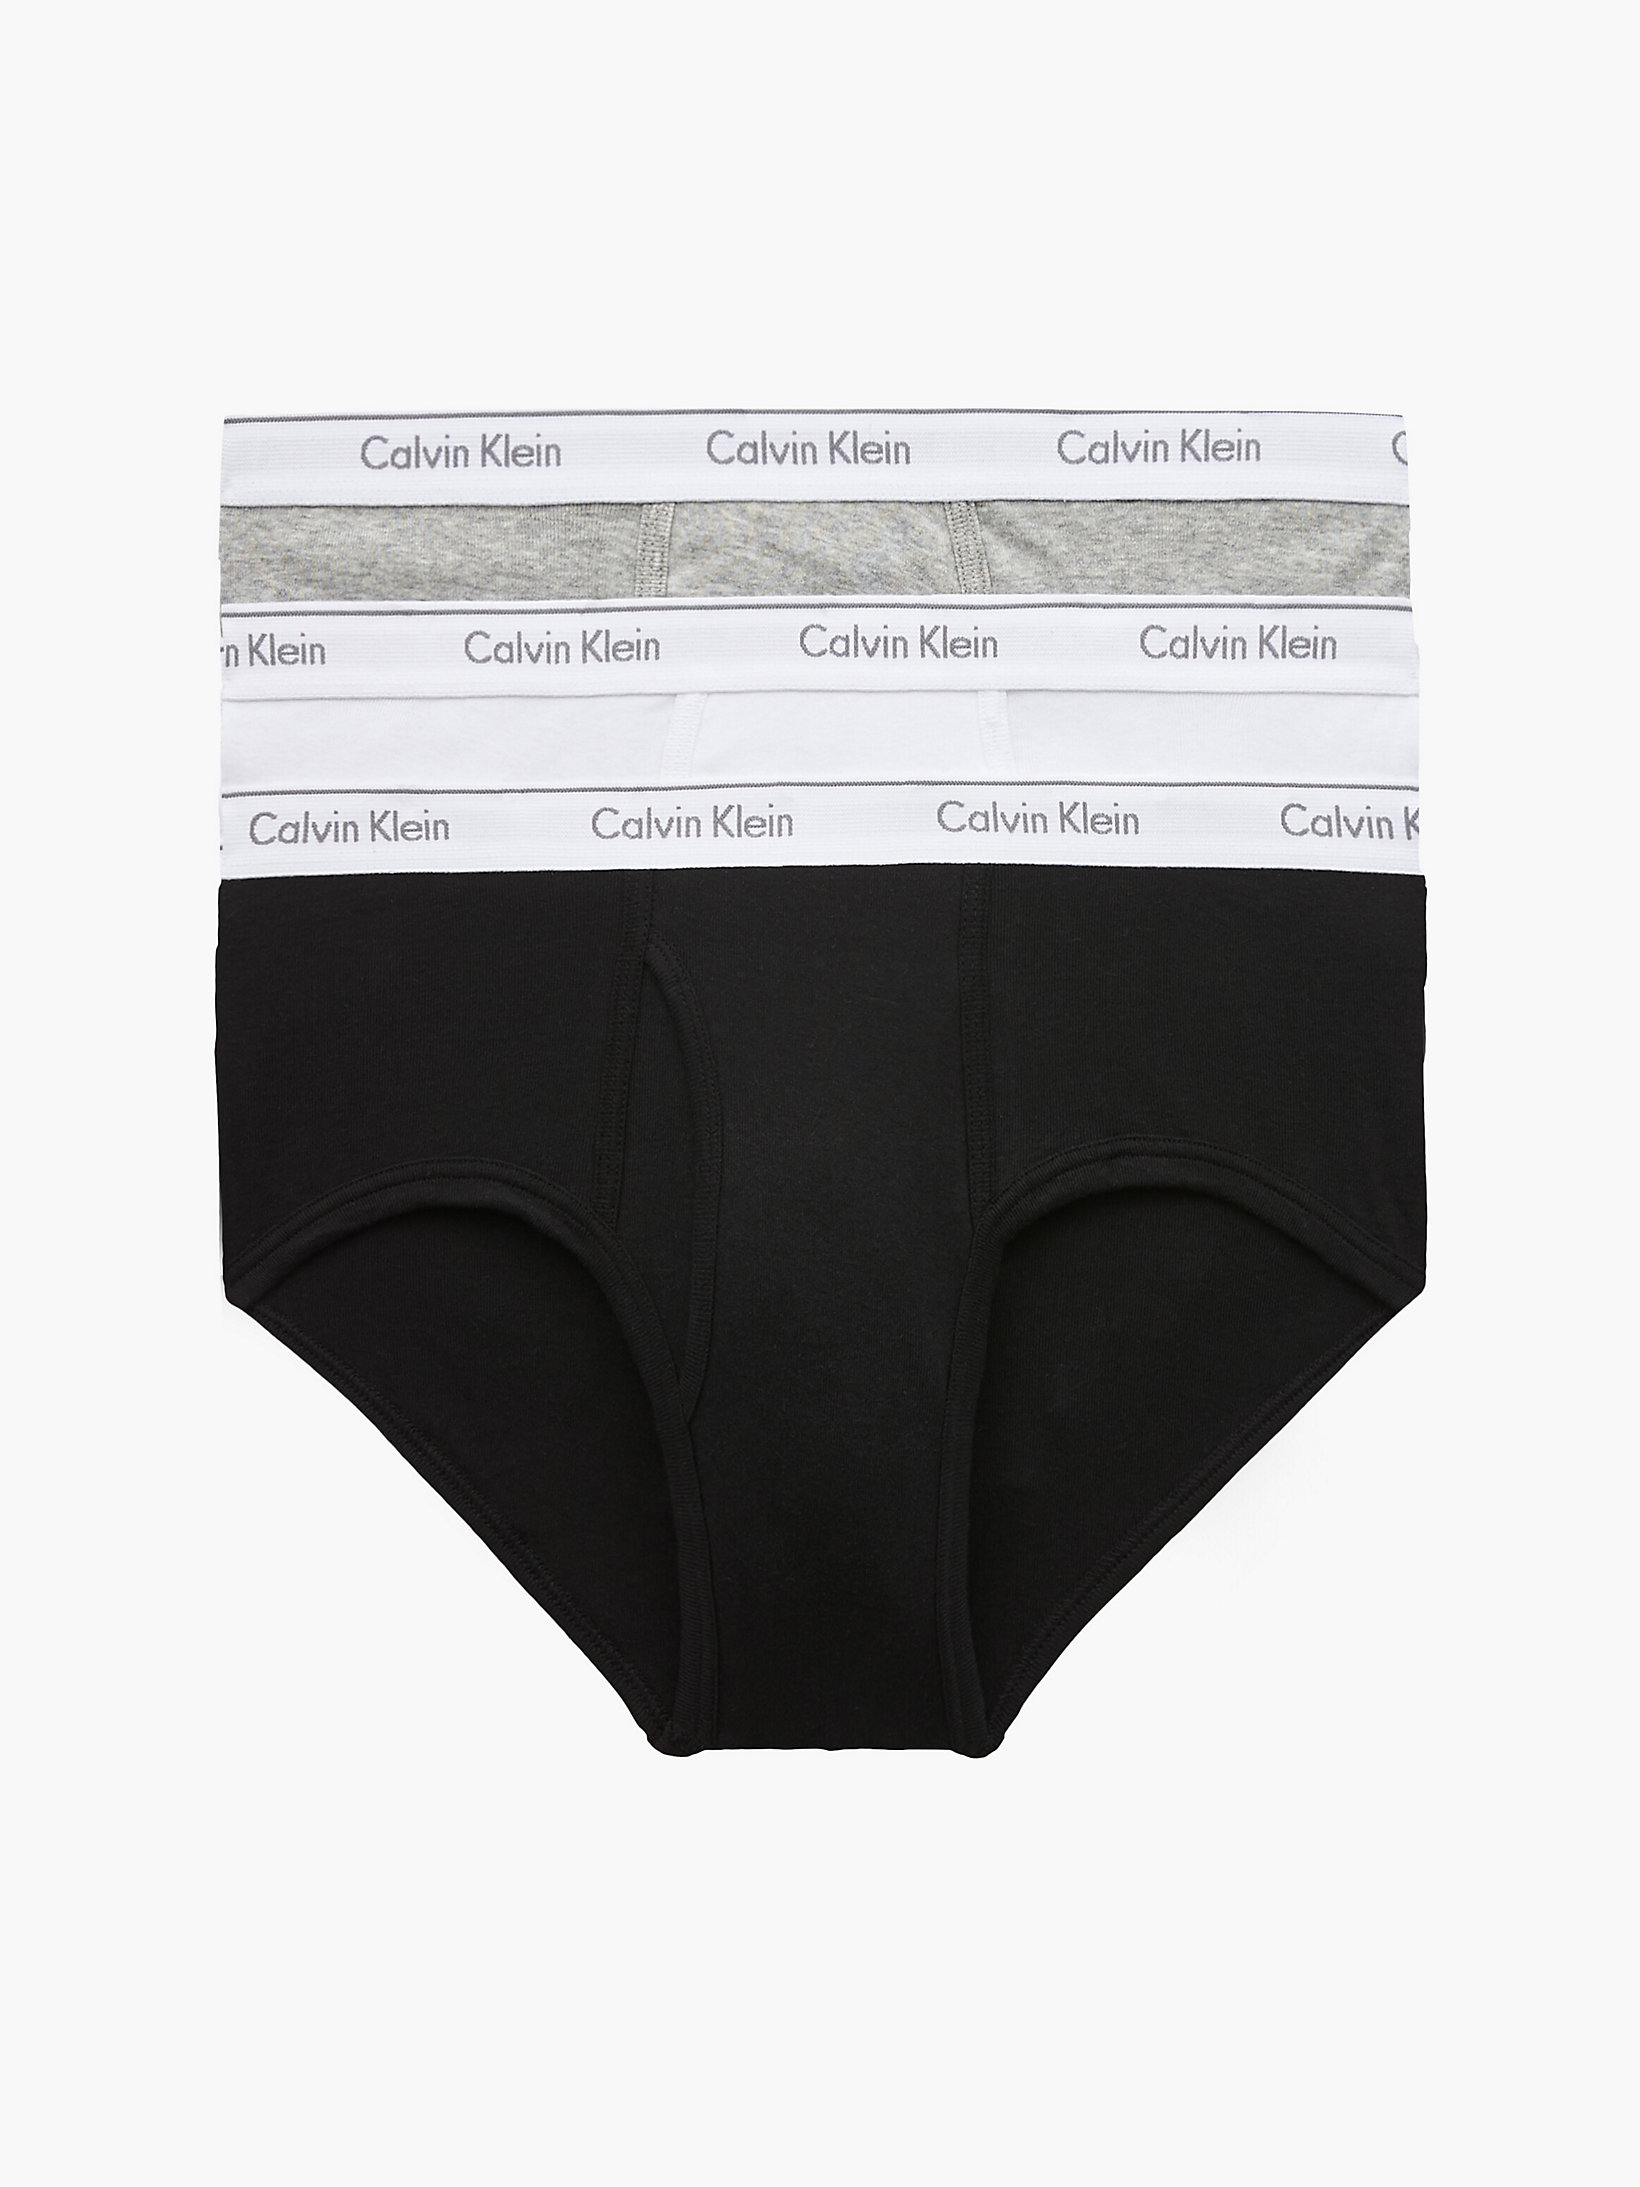 Black/white/grey Heather 3 Pack Briefs - Cotton Classics undefined men Calvin Klein